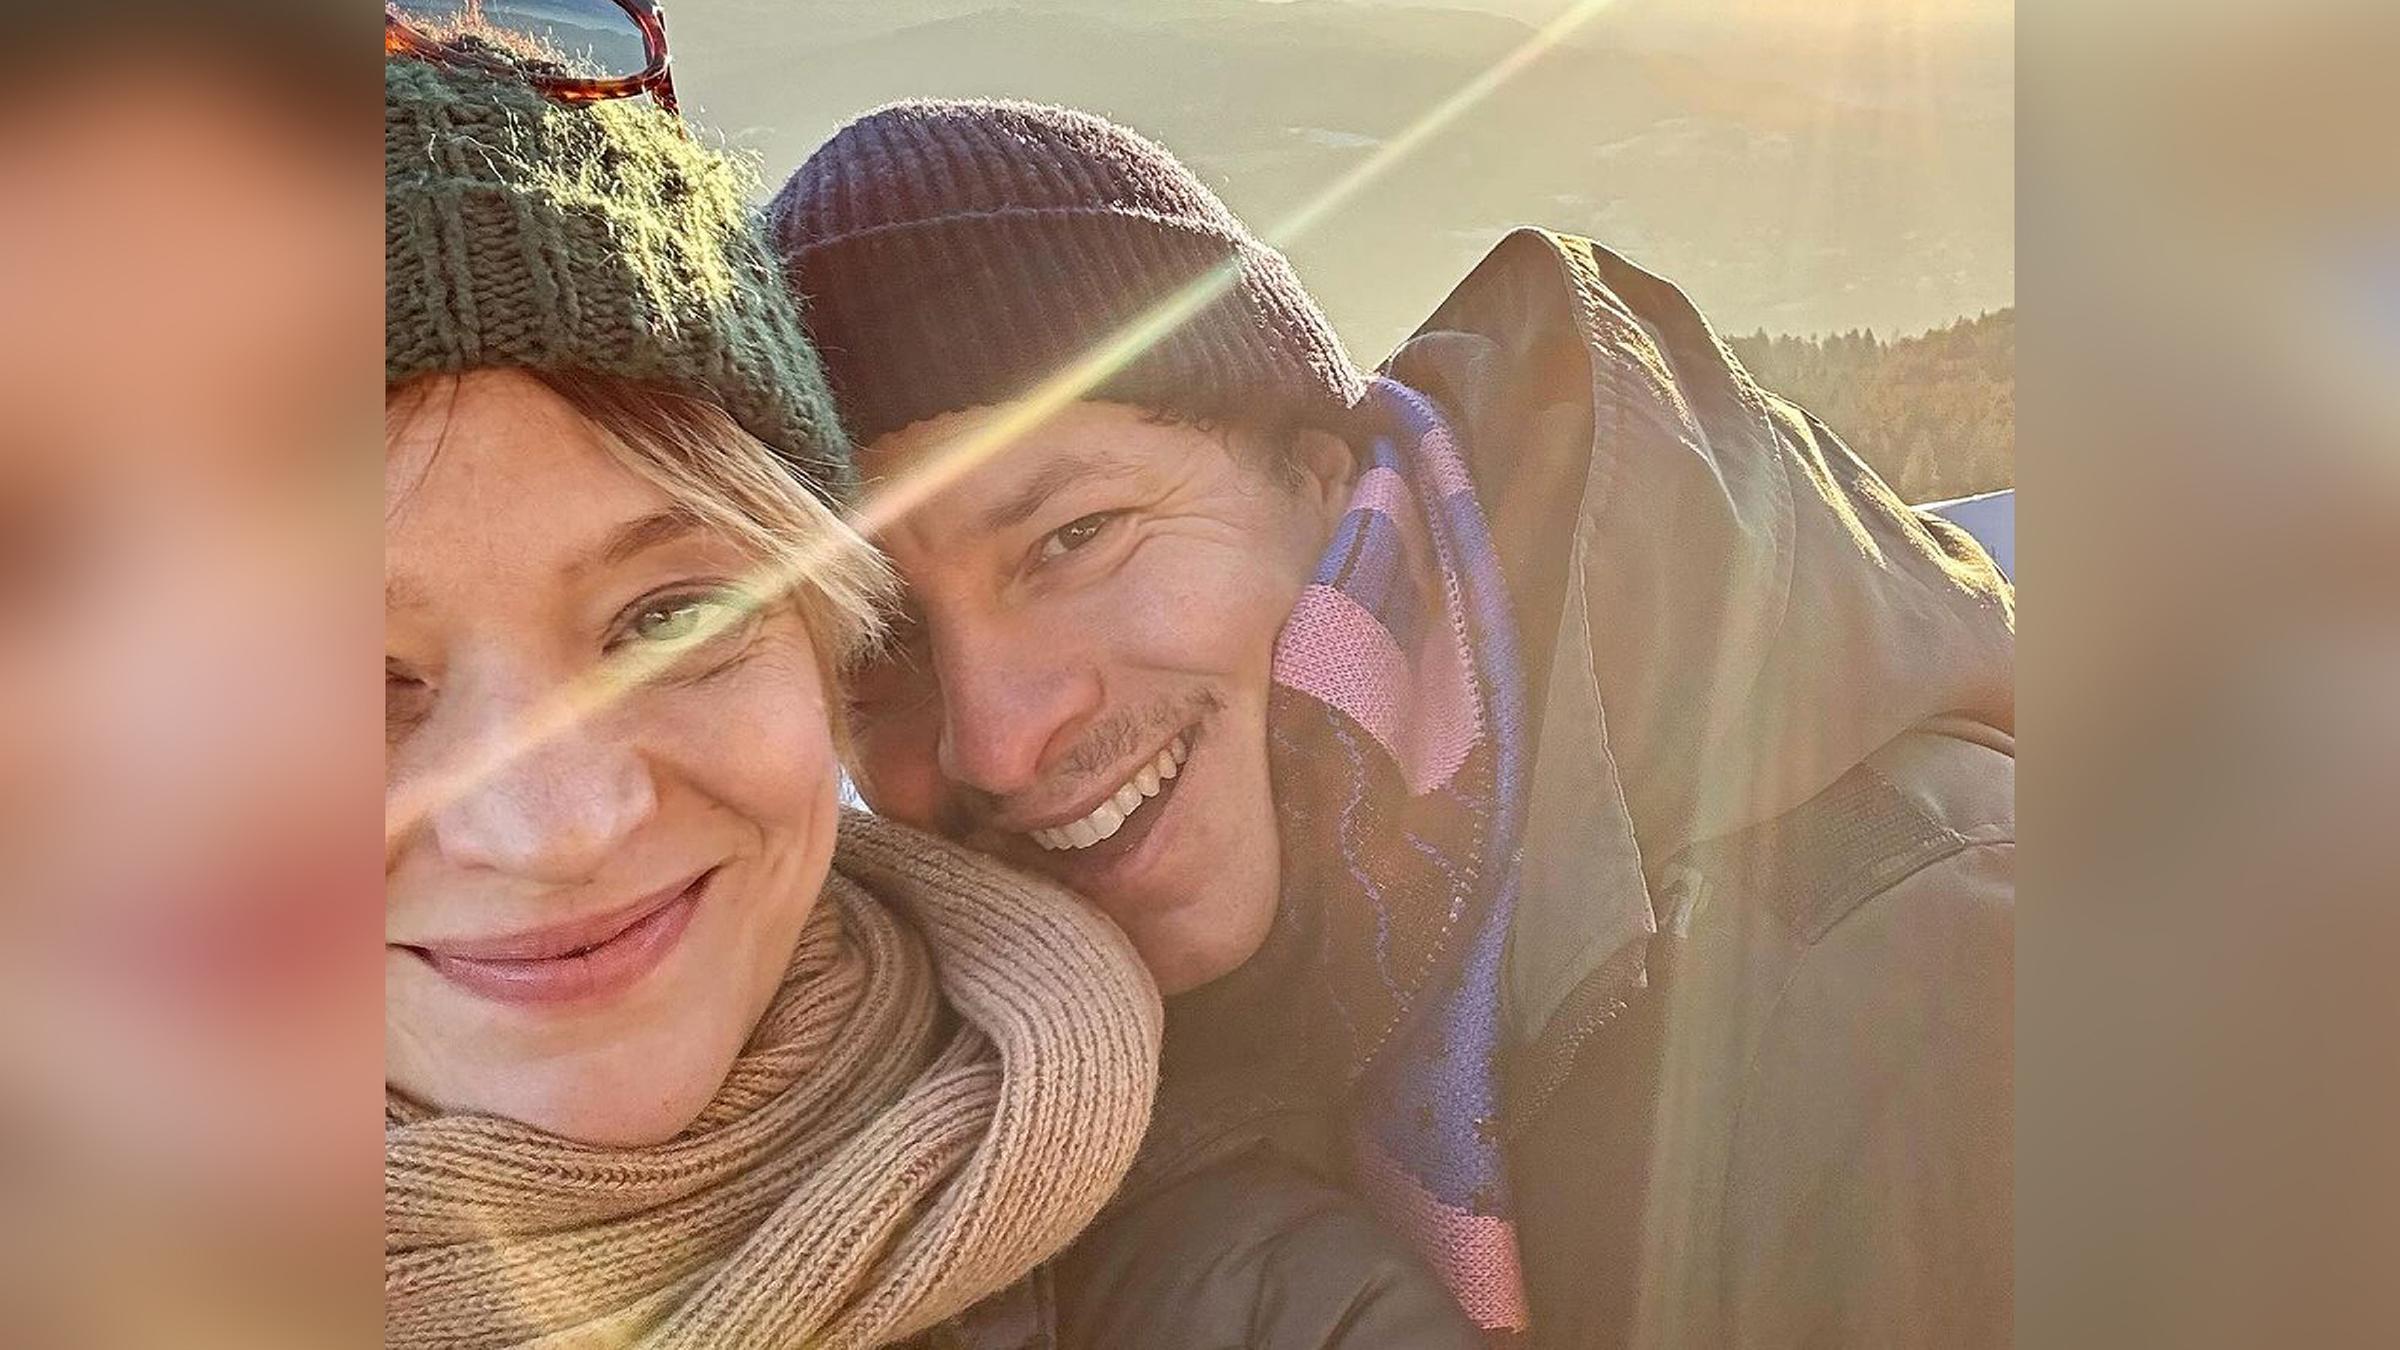 Urlaubs-Selfie von Heike Makatsch mit ihrem Freund Trystan Pütter